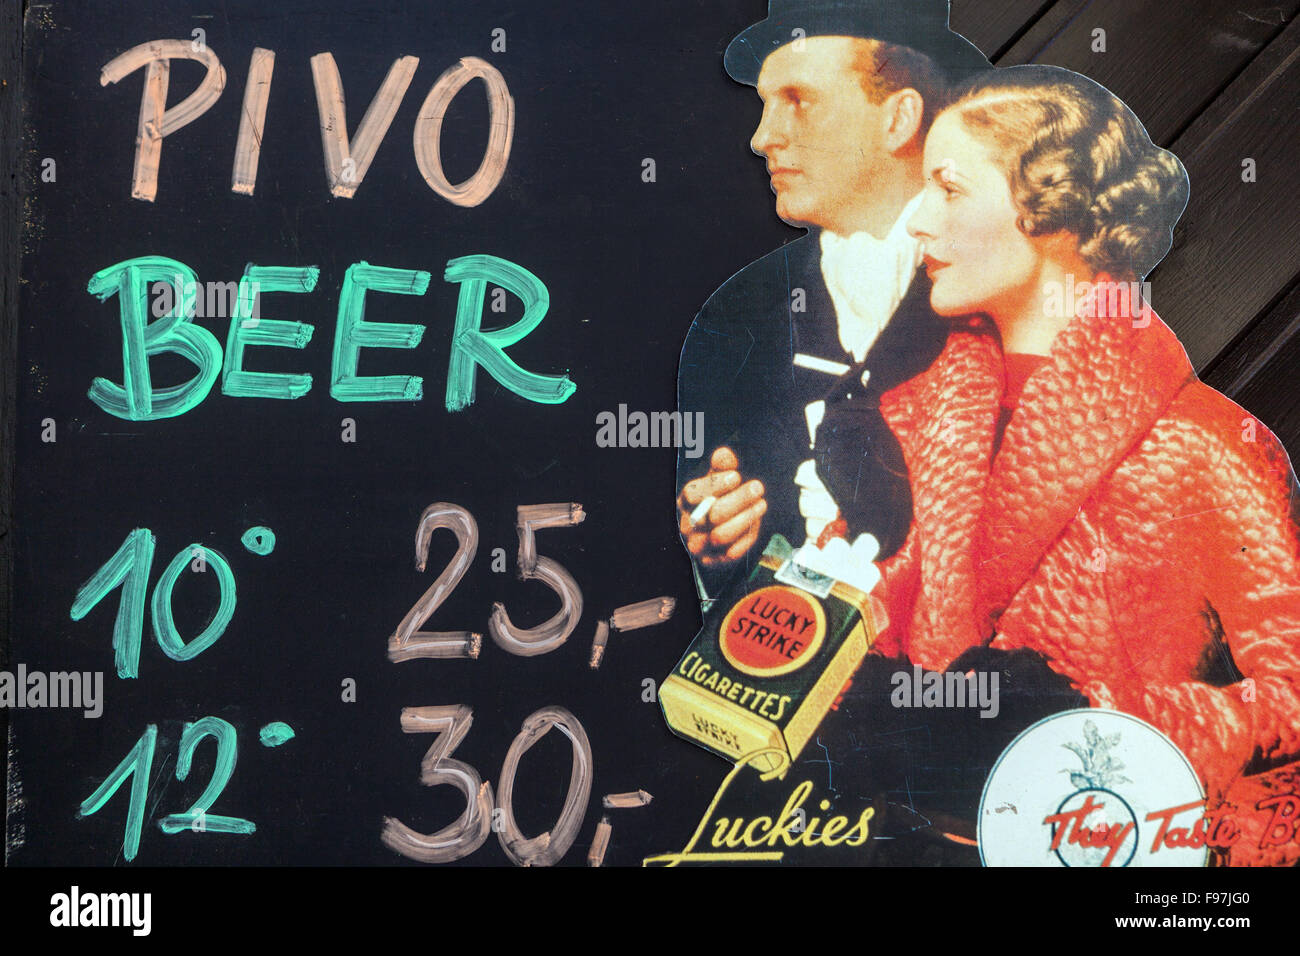 Menu de la bière tchèque sur le tableau de craie, prix, Prague, publicité de bière d'époque de la République tchèque Banque D'Images